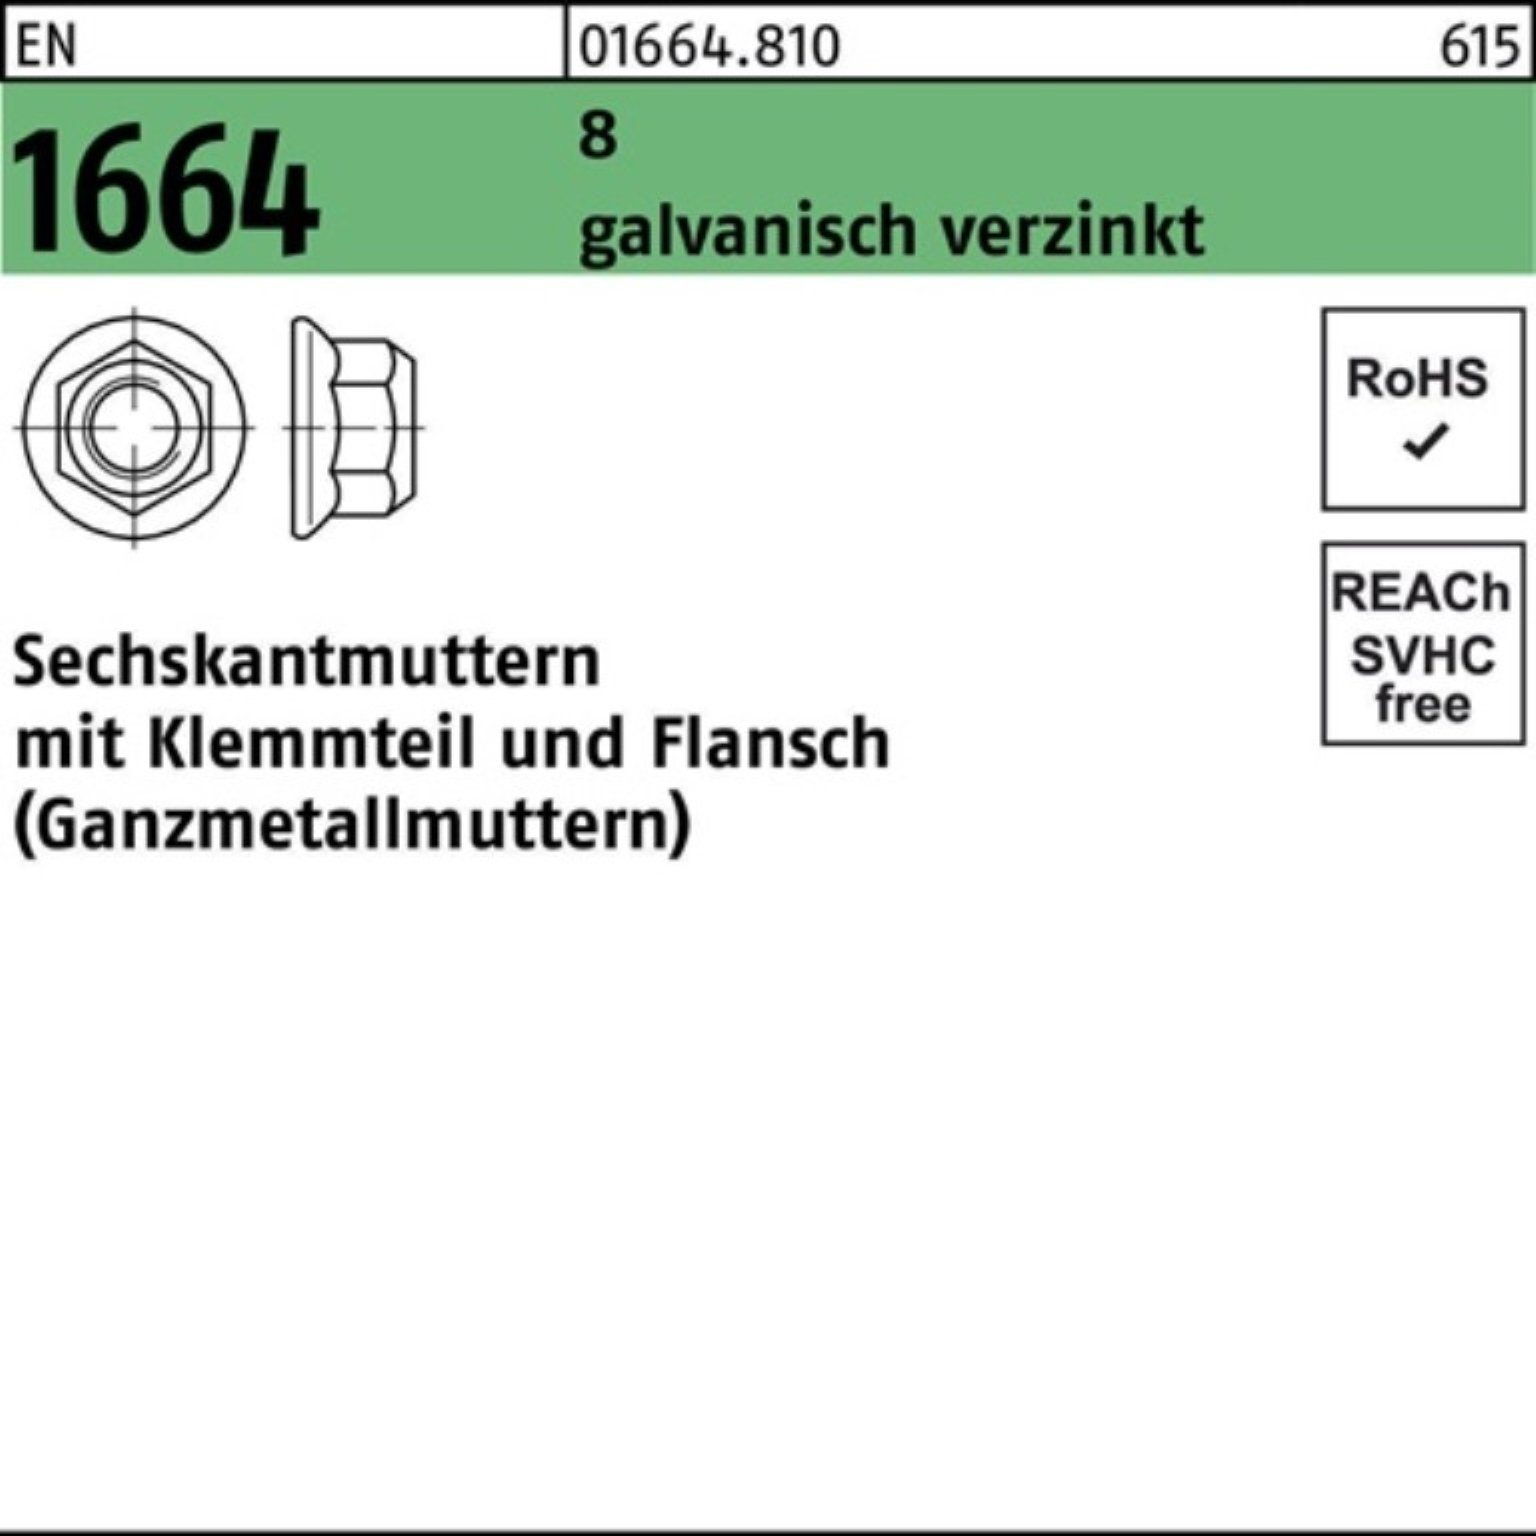 1664 Klemmteil/Flansch 100er 8 M16 EN galv.verz. Pack Reyher Sechskantmutter Muttern